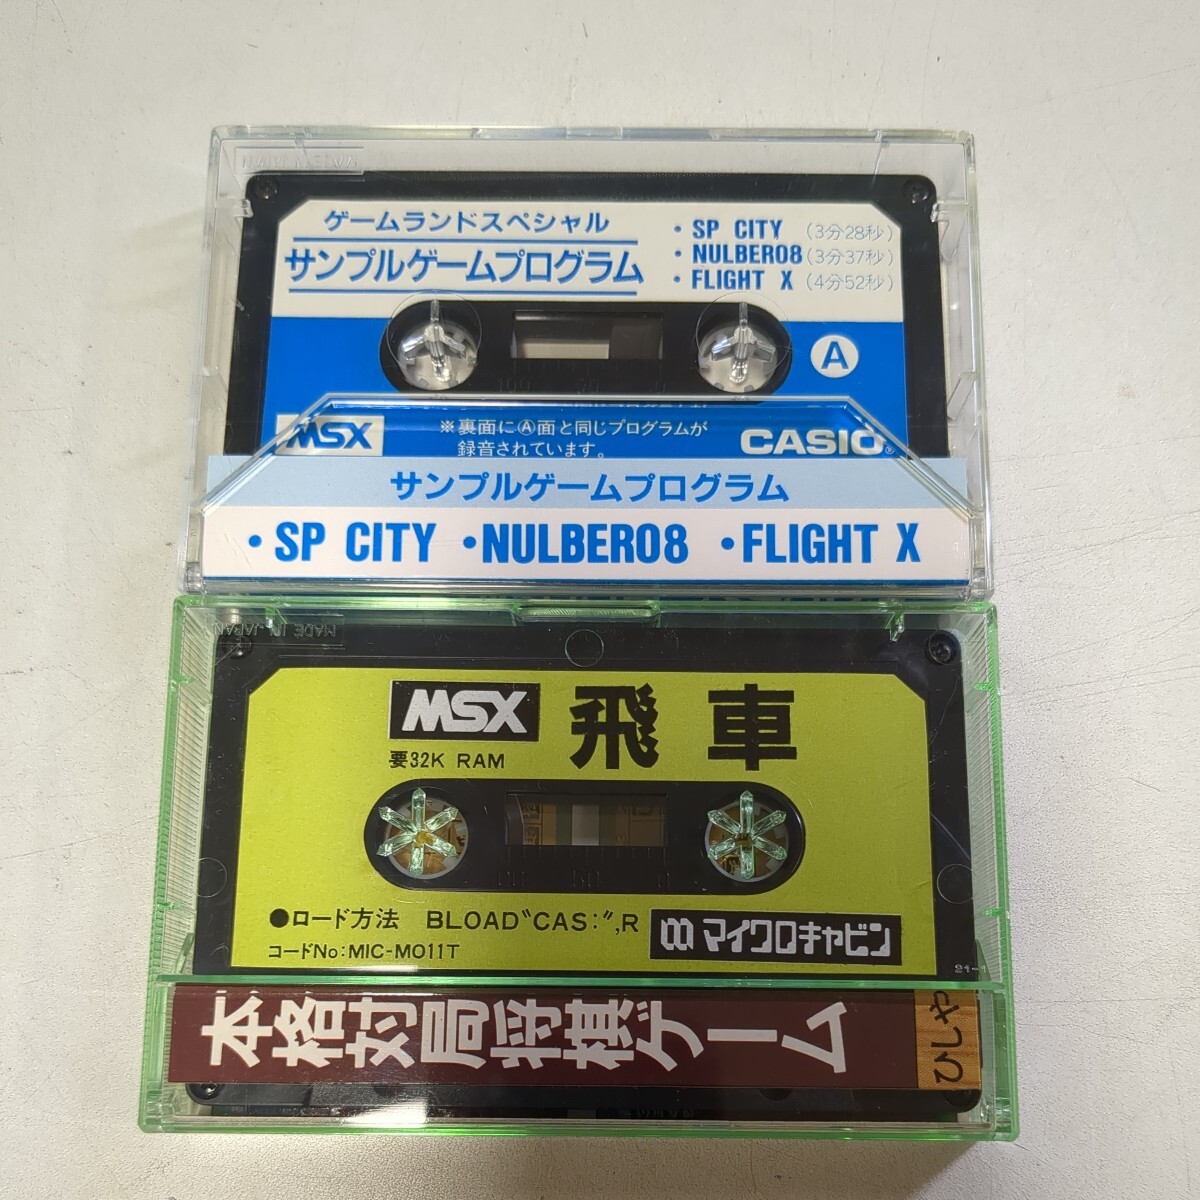 4202 カセットテープ 11本 古いカセットテープ 中古 の画像6